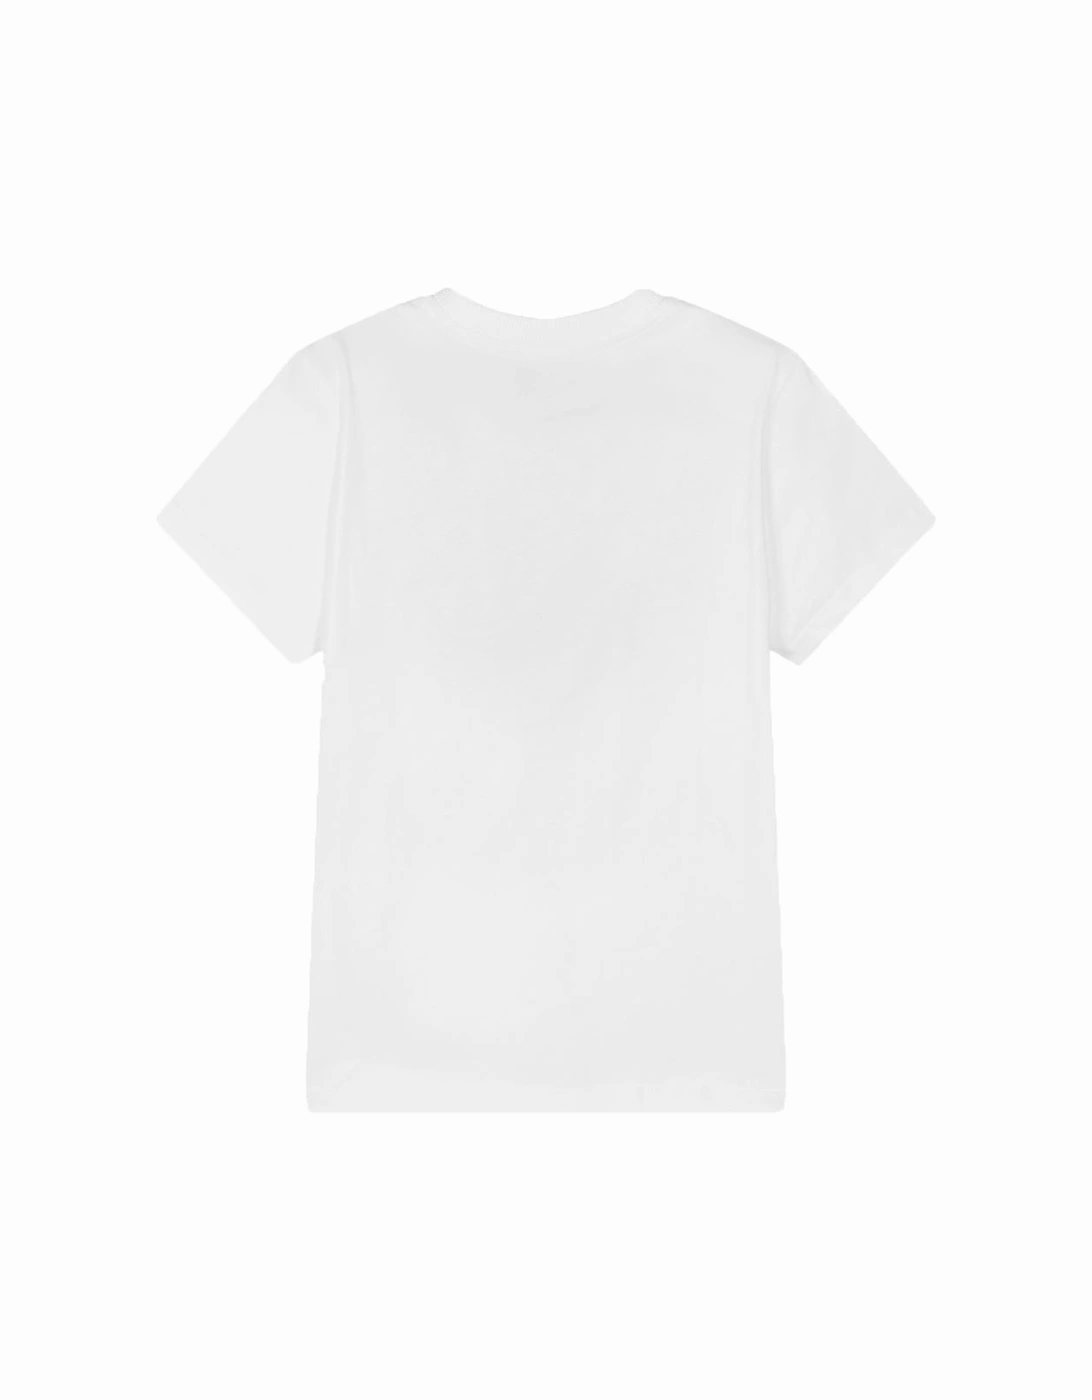 Unisex Kids Oversized Bear T-shirt White